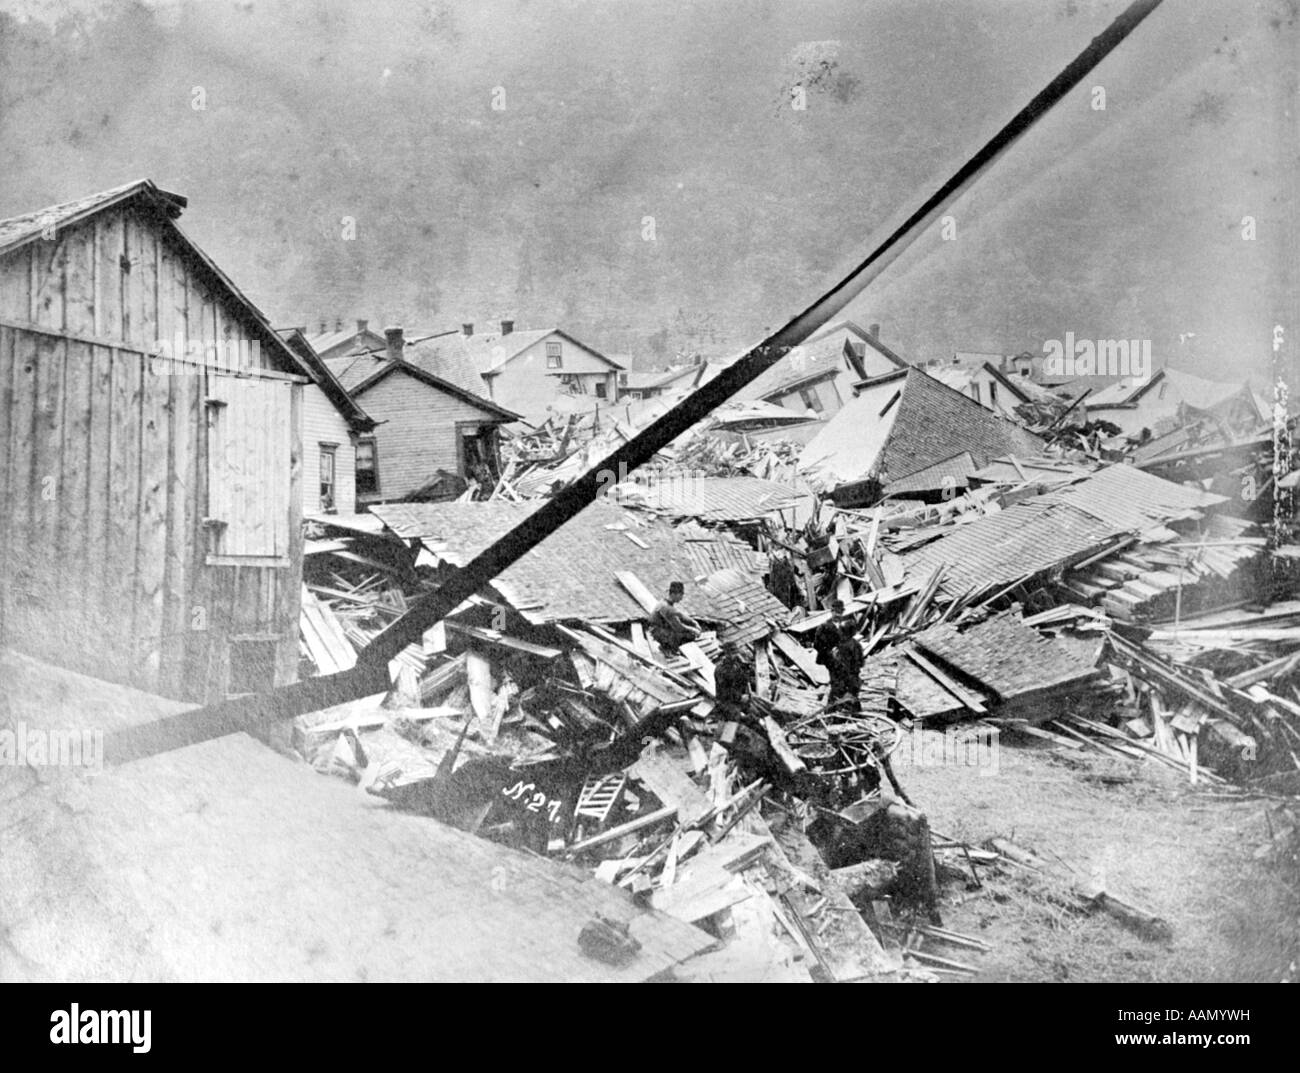 31 MAGGIO 1889 rovinato gli edifici danneggiati JOHNSTOWN PENNSYLVANIA FLOOD immagine di linea dal vetro rotto negativo Foto Stock